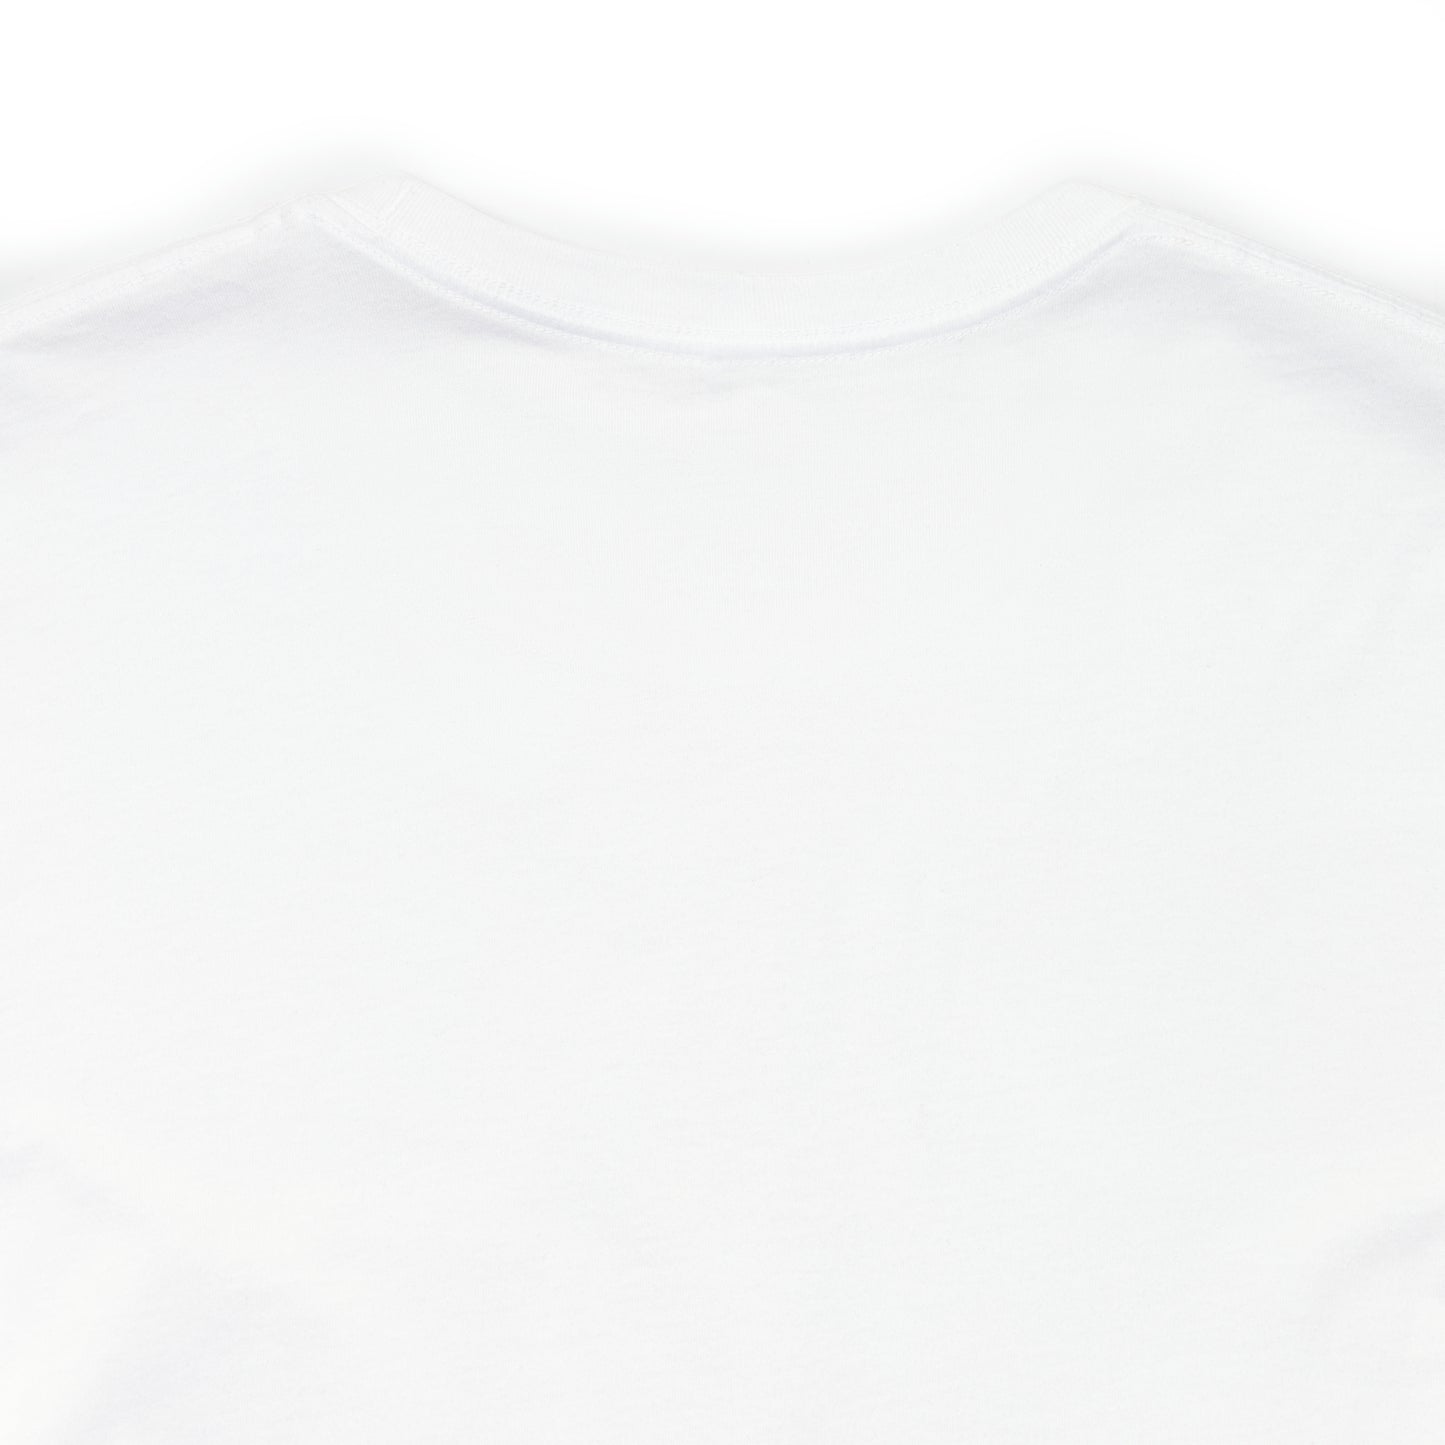 Just Chill - Lemonade Daydream Pop Art Premium White T-Shirt